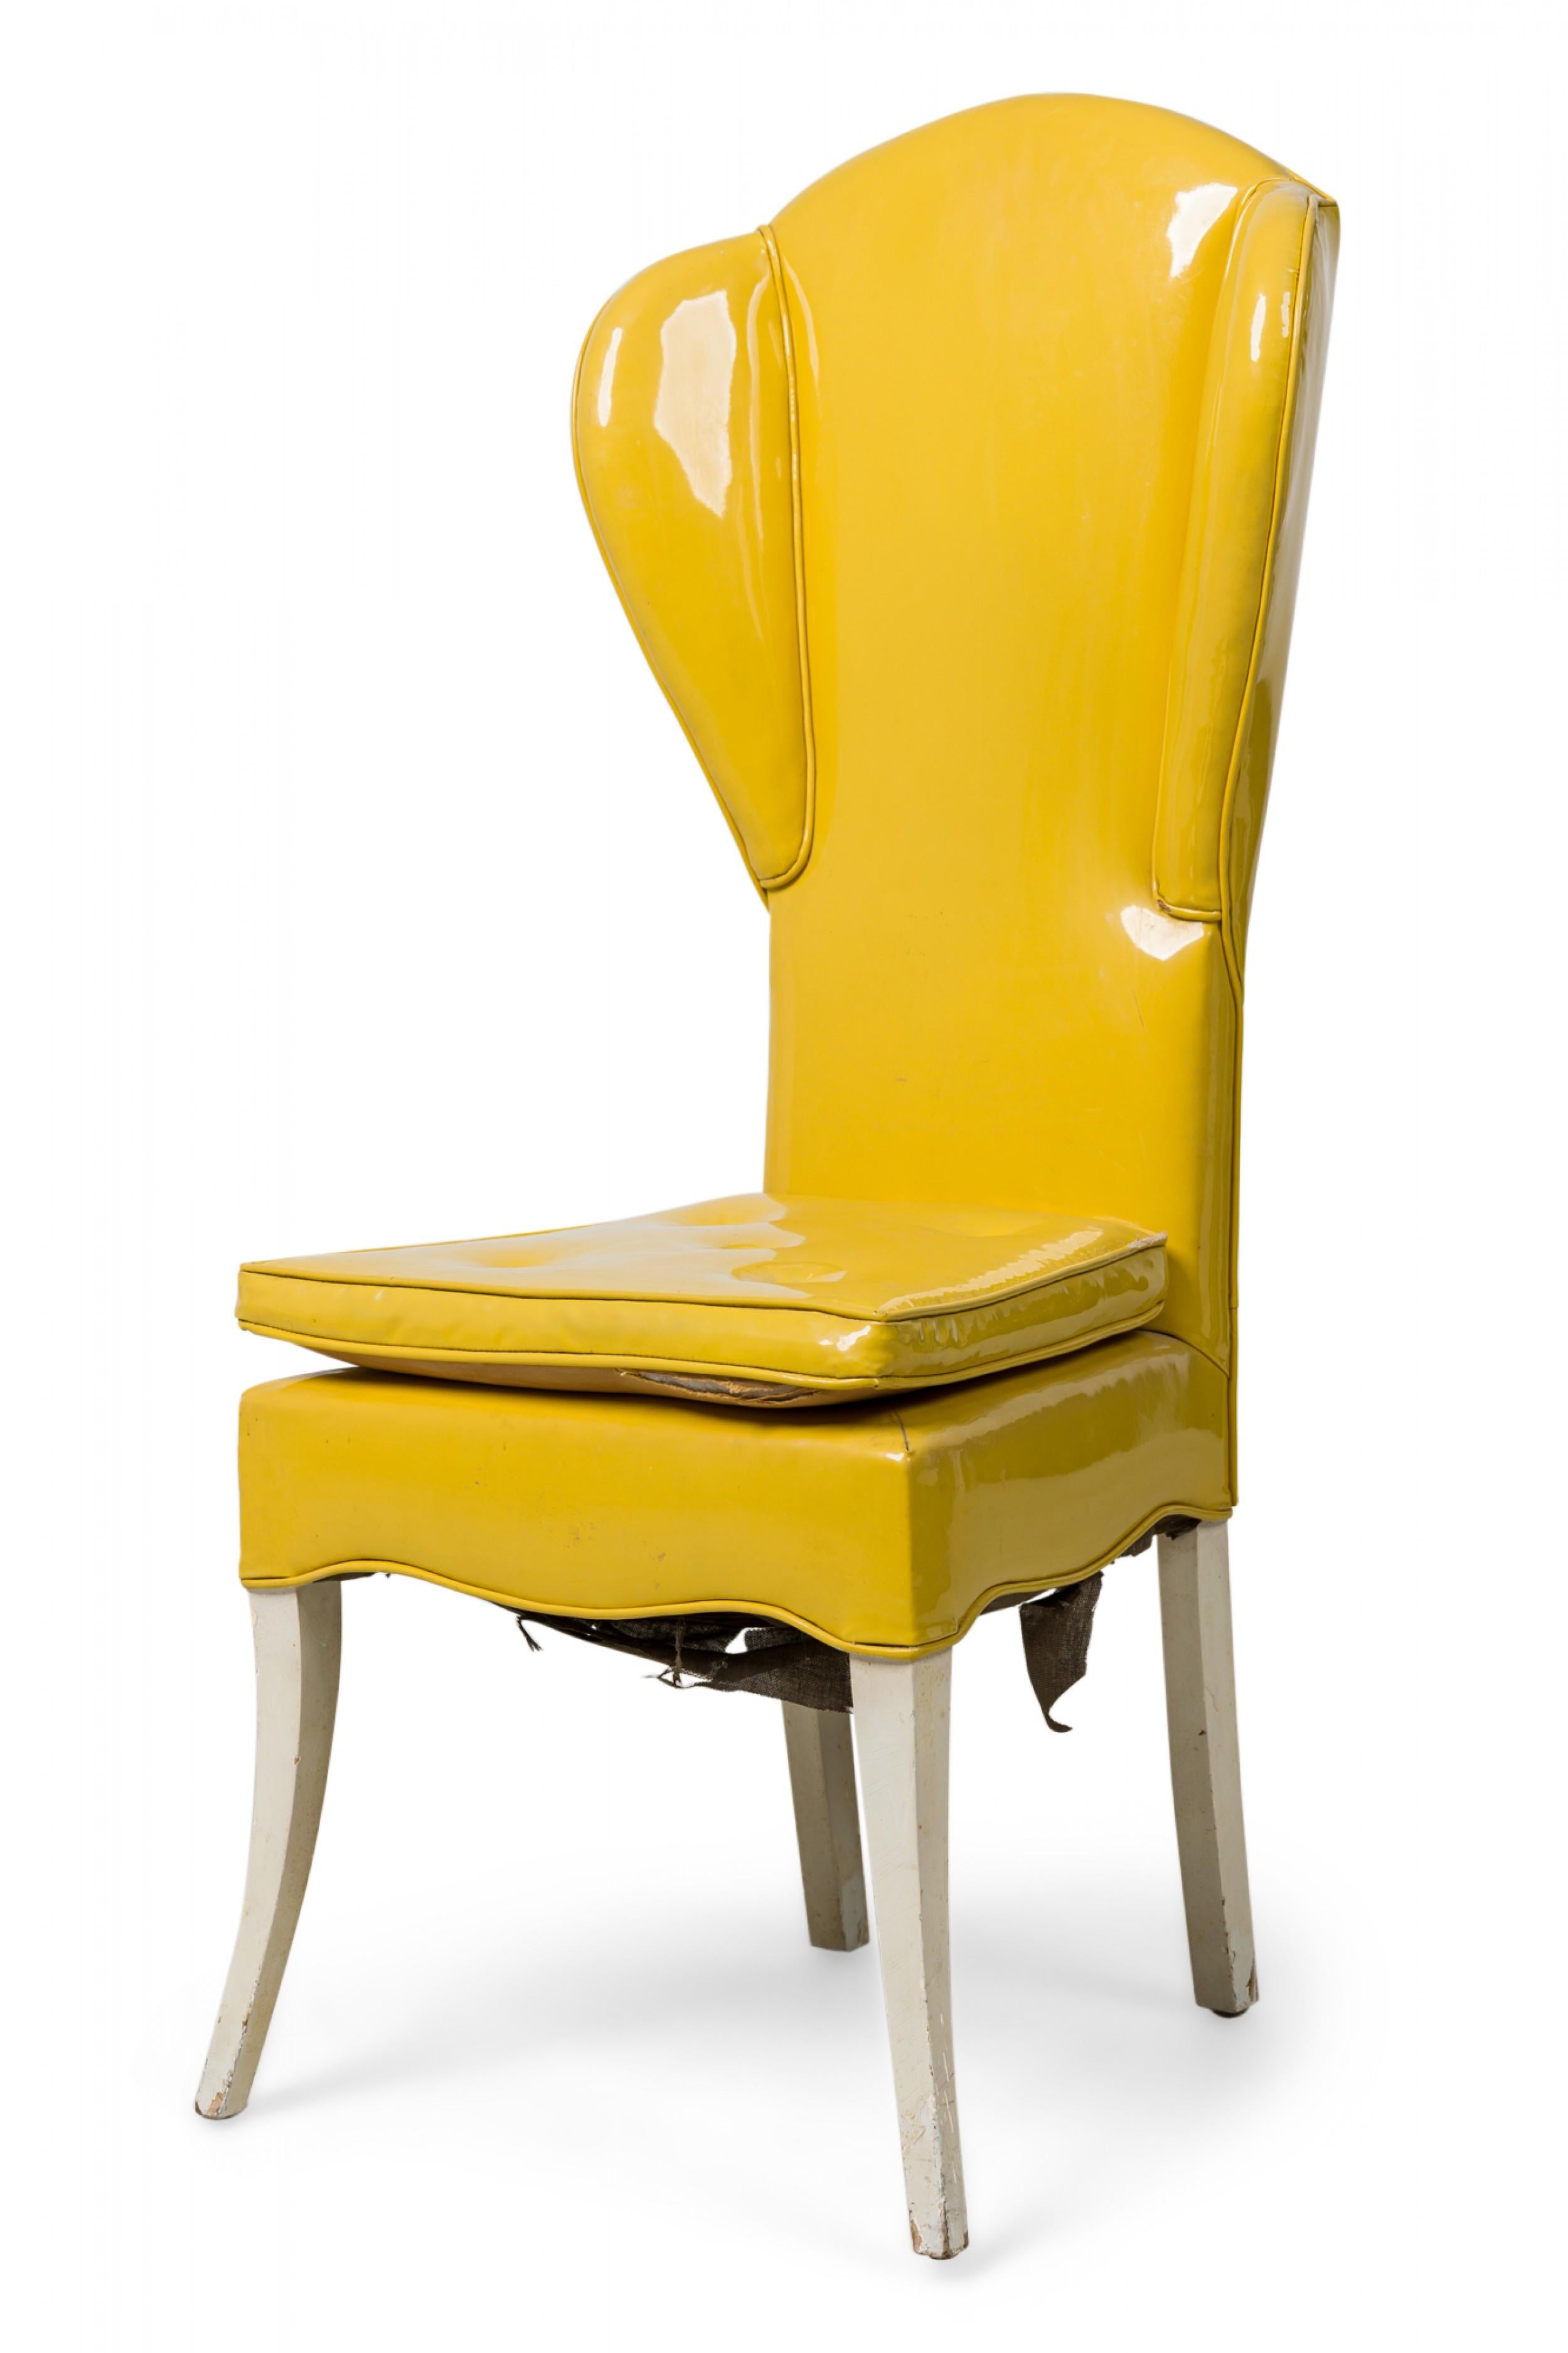 Fauteuil à oreilles américain du milieu du siècle, rembourré et tapissé de vinyle jaune brillant, avec un coussin d'assise carré, un tablier en forme et des pieds évasés peints en blanc. (Attribué à Tommi Parzinger).